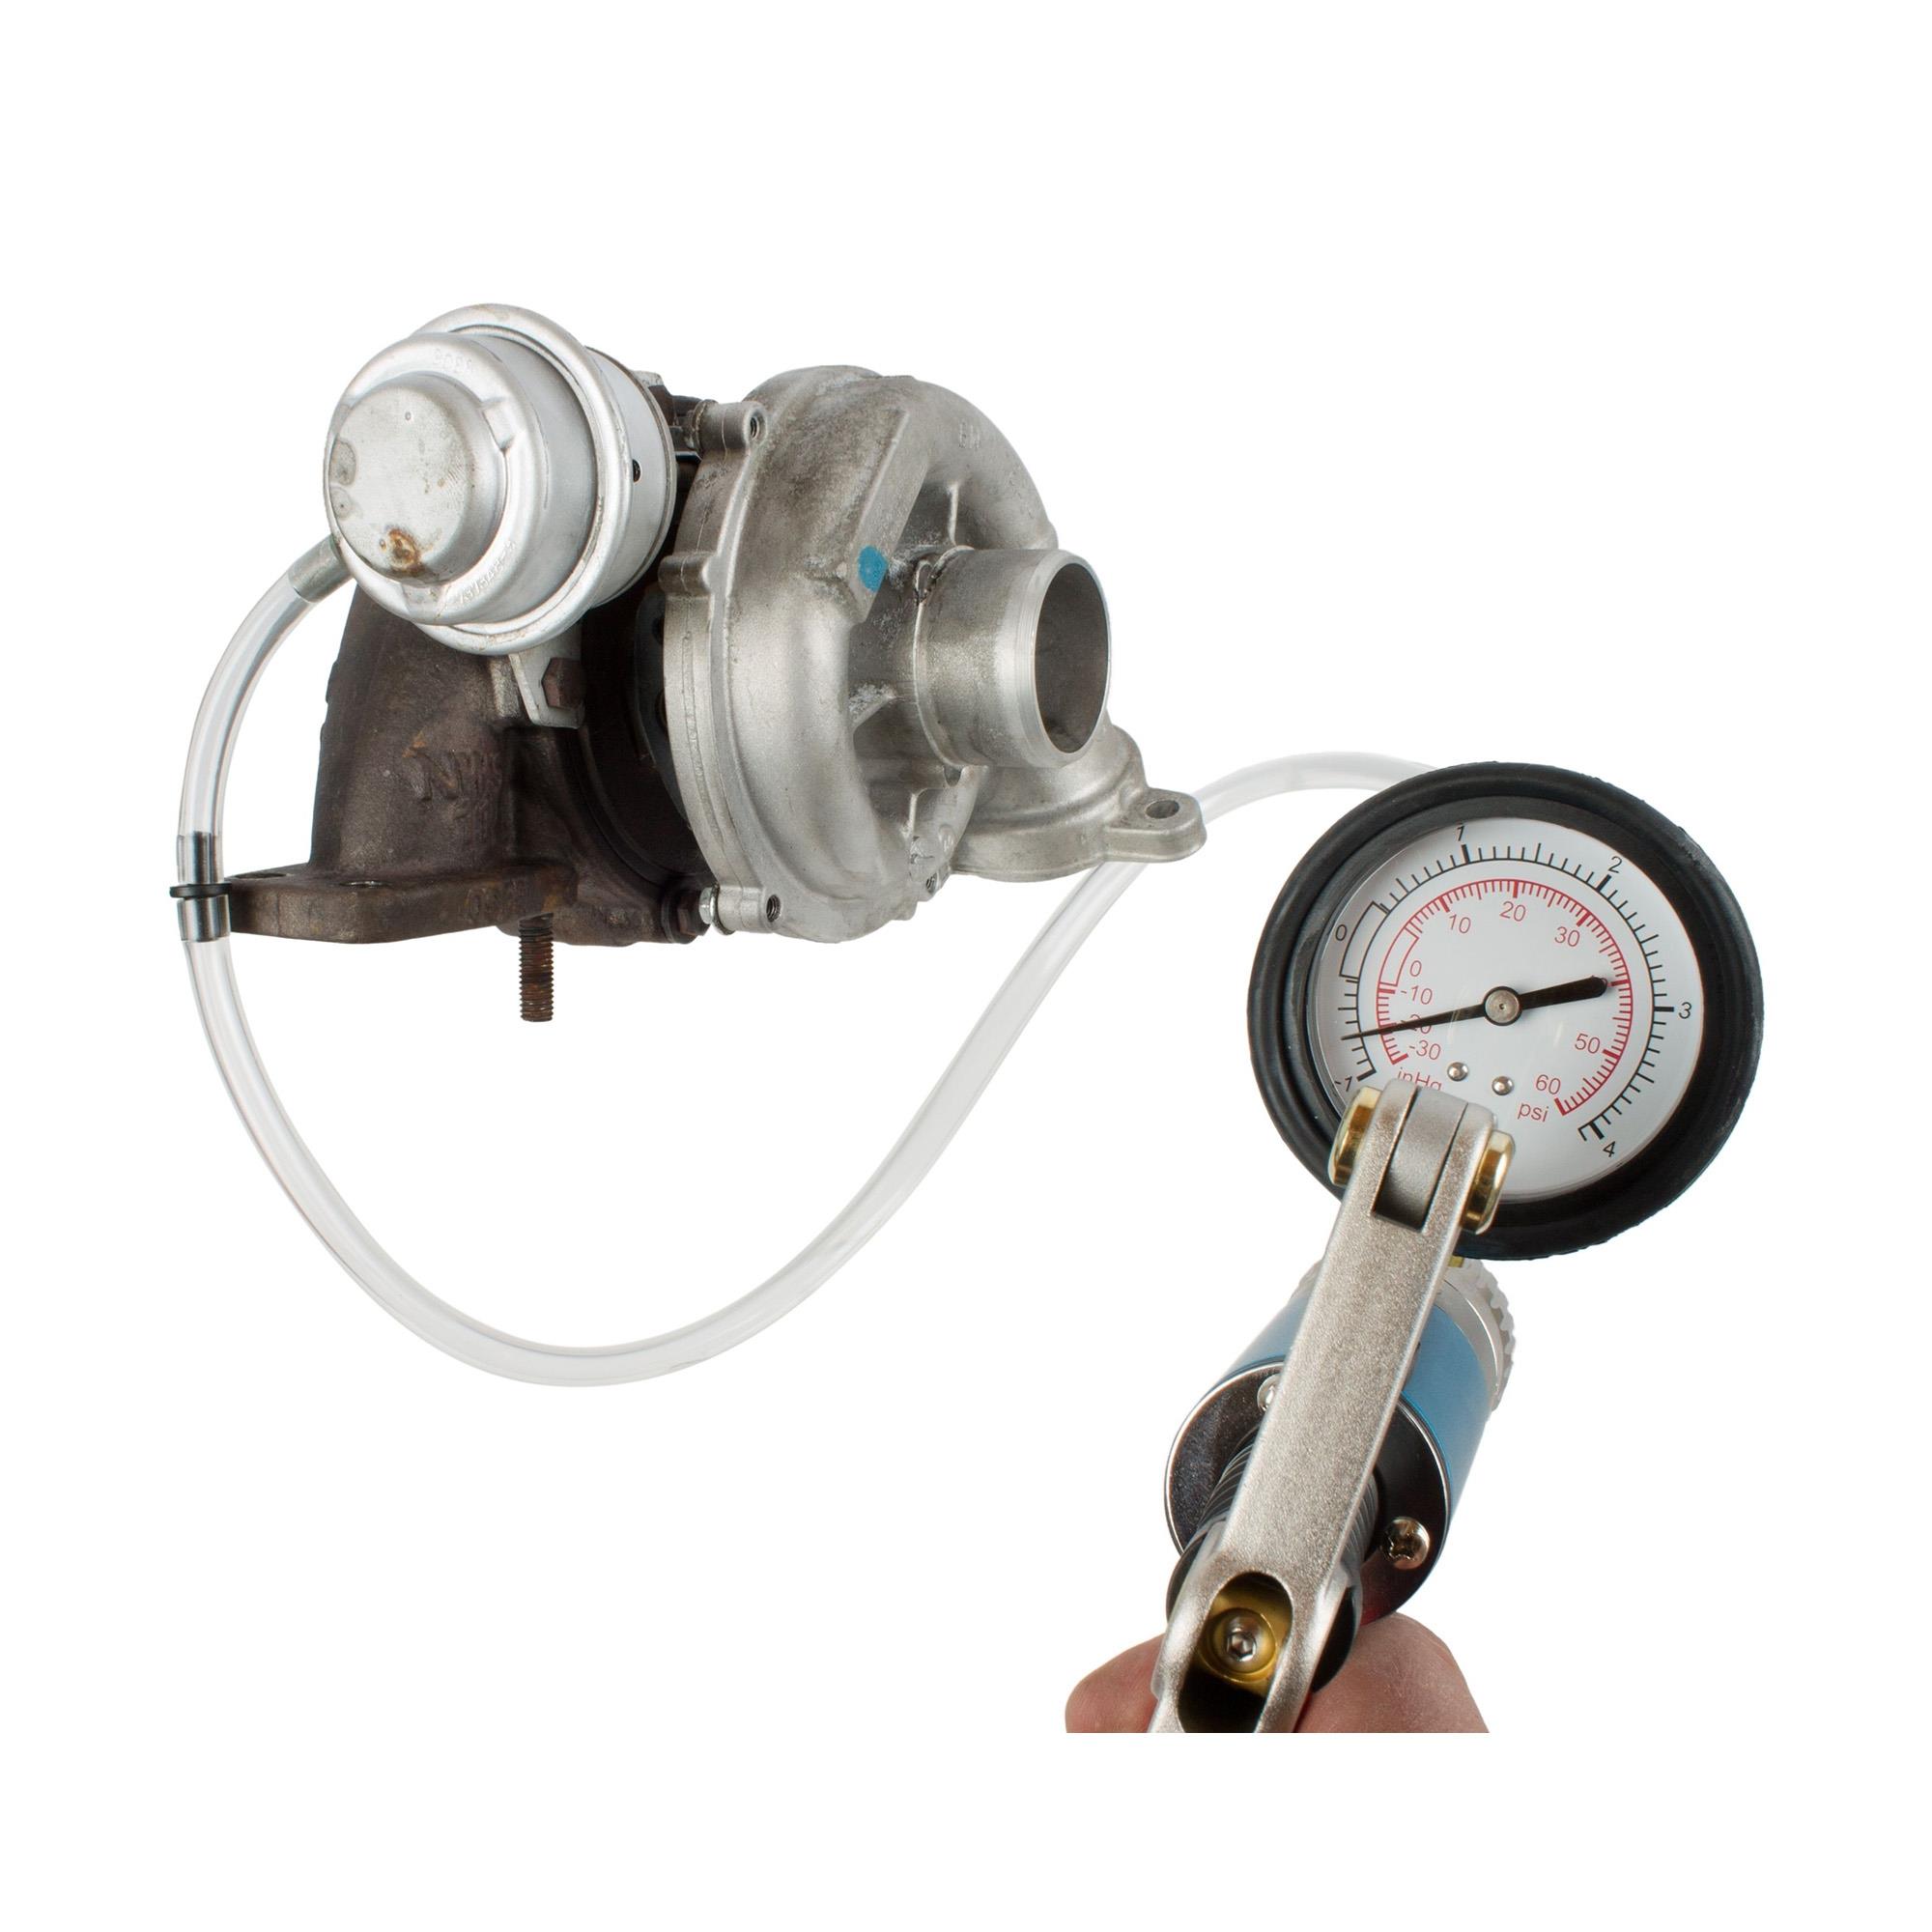 Vakuum-, Druckpumpe für Kraftstoffentlüftung und Unter-, Druckprüfung, Entlüftung / Befüllen, Kraftstoff / Einspritzung, Spezialwerkzeug